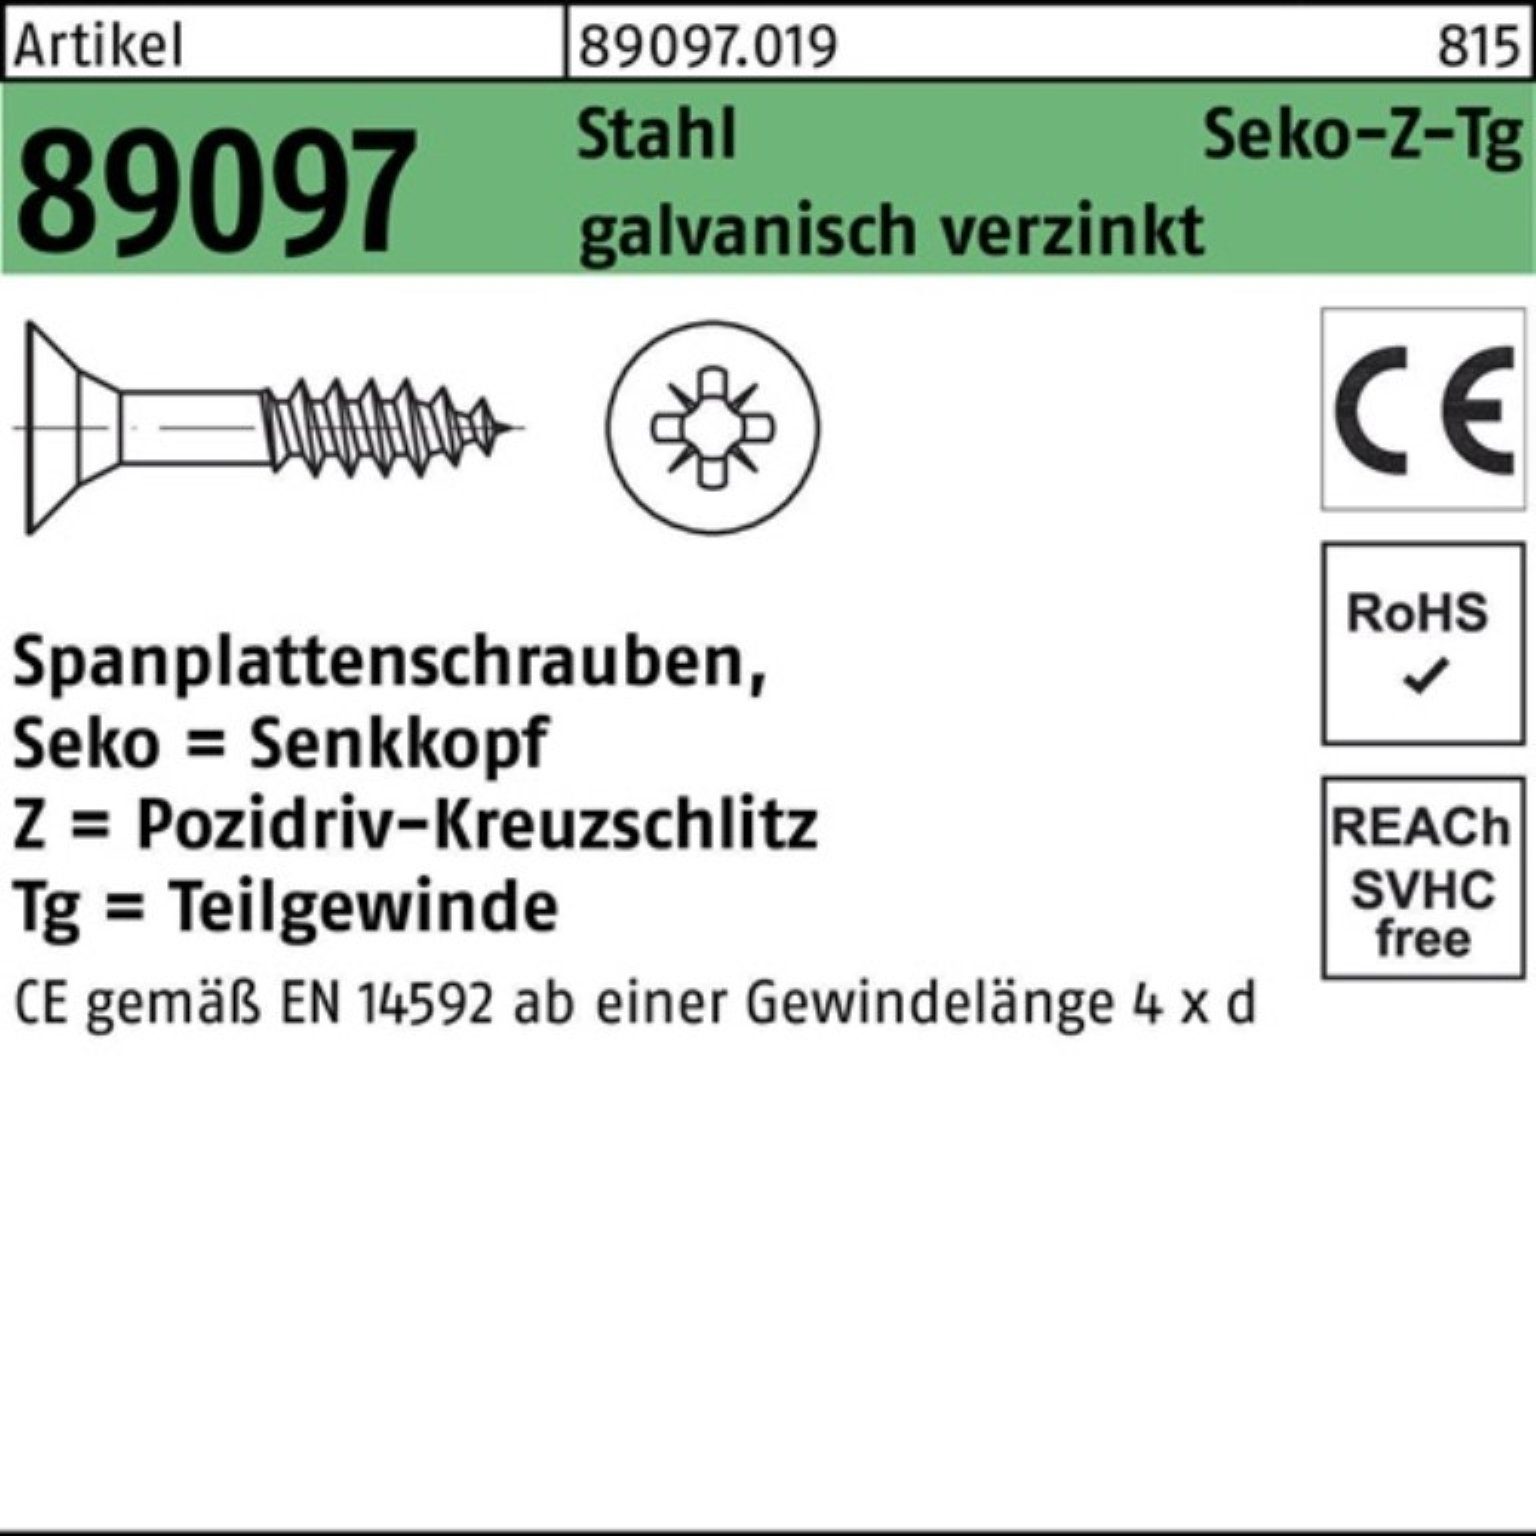 Reyher Spanplattenschraube 100er Pack R Stahl PZ SEKO 89097 6x100/60-Z Spanplattenschraube TG gal